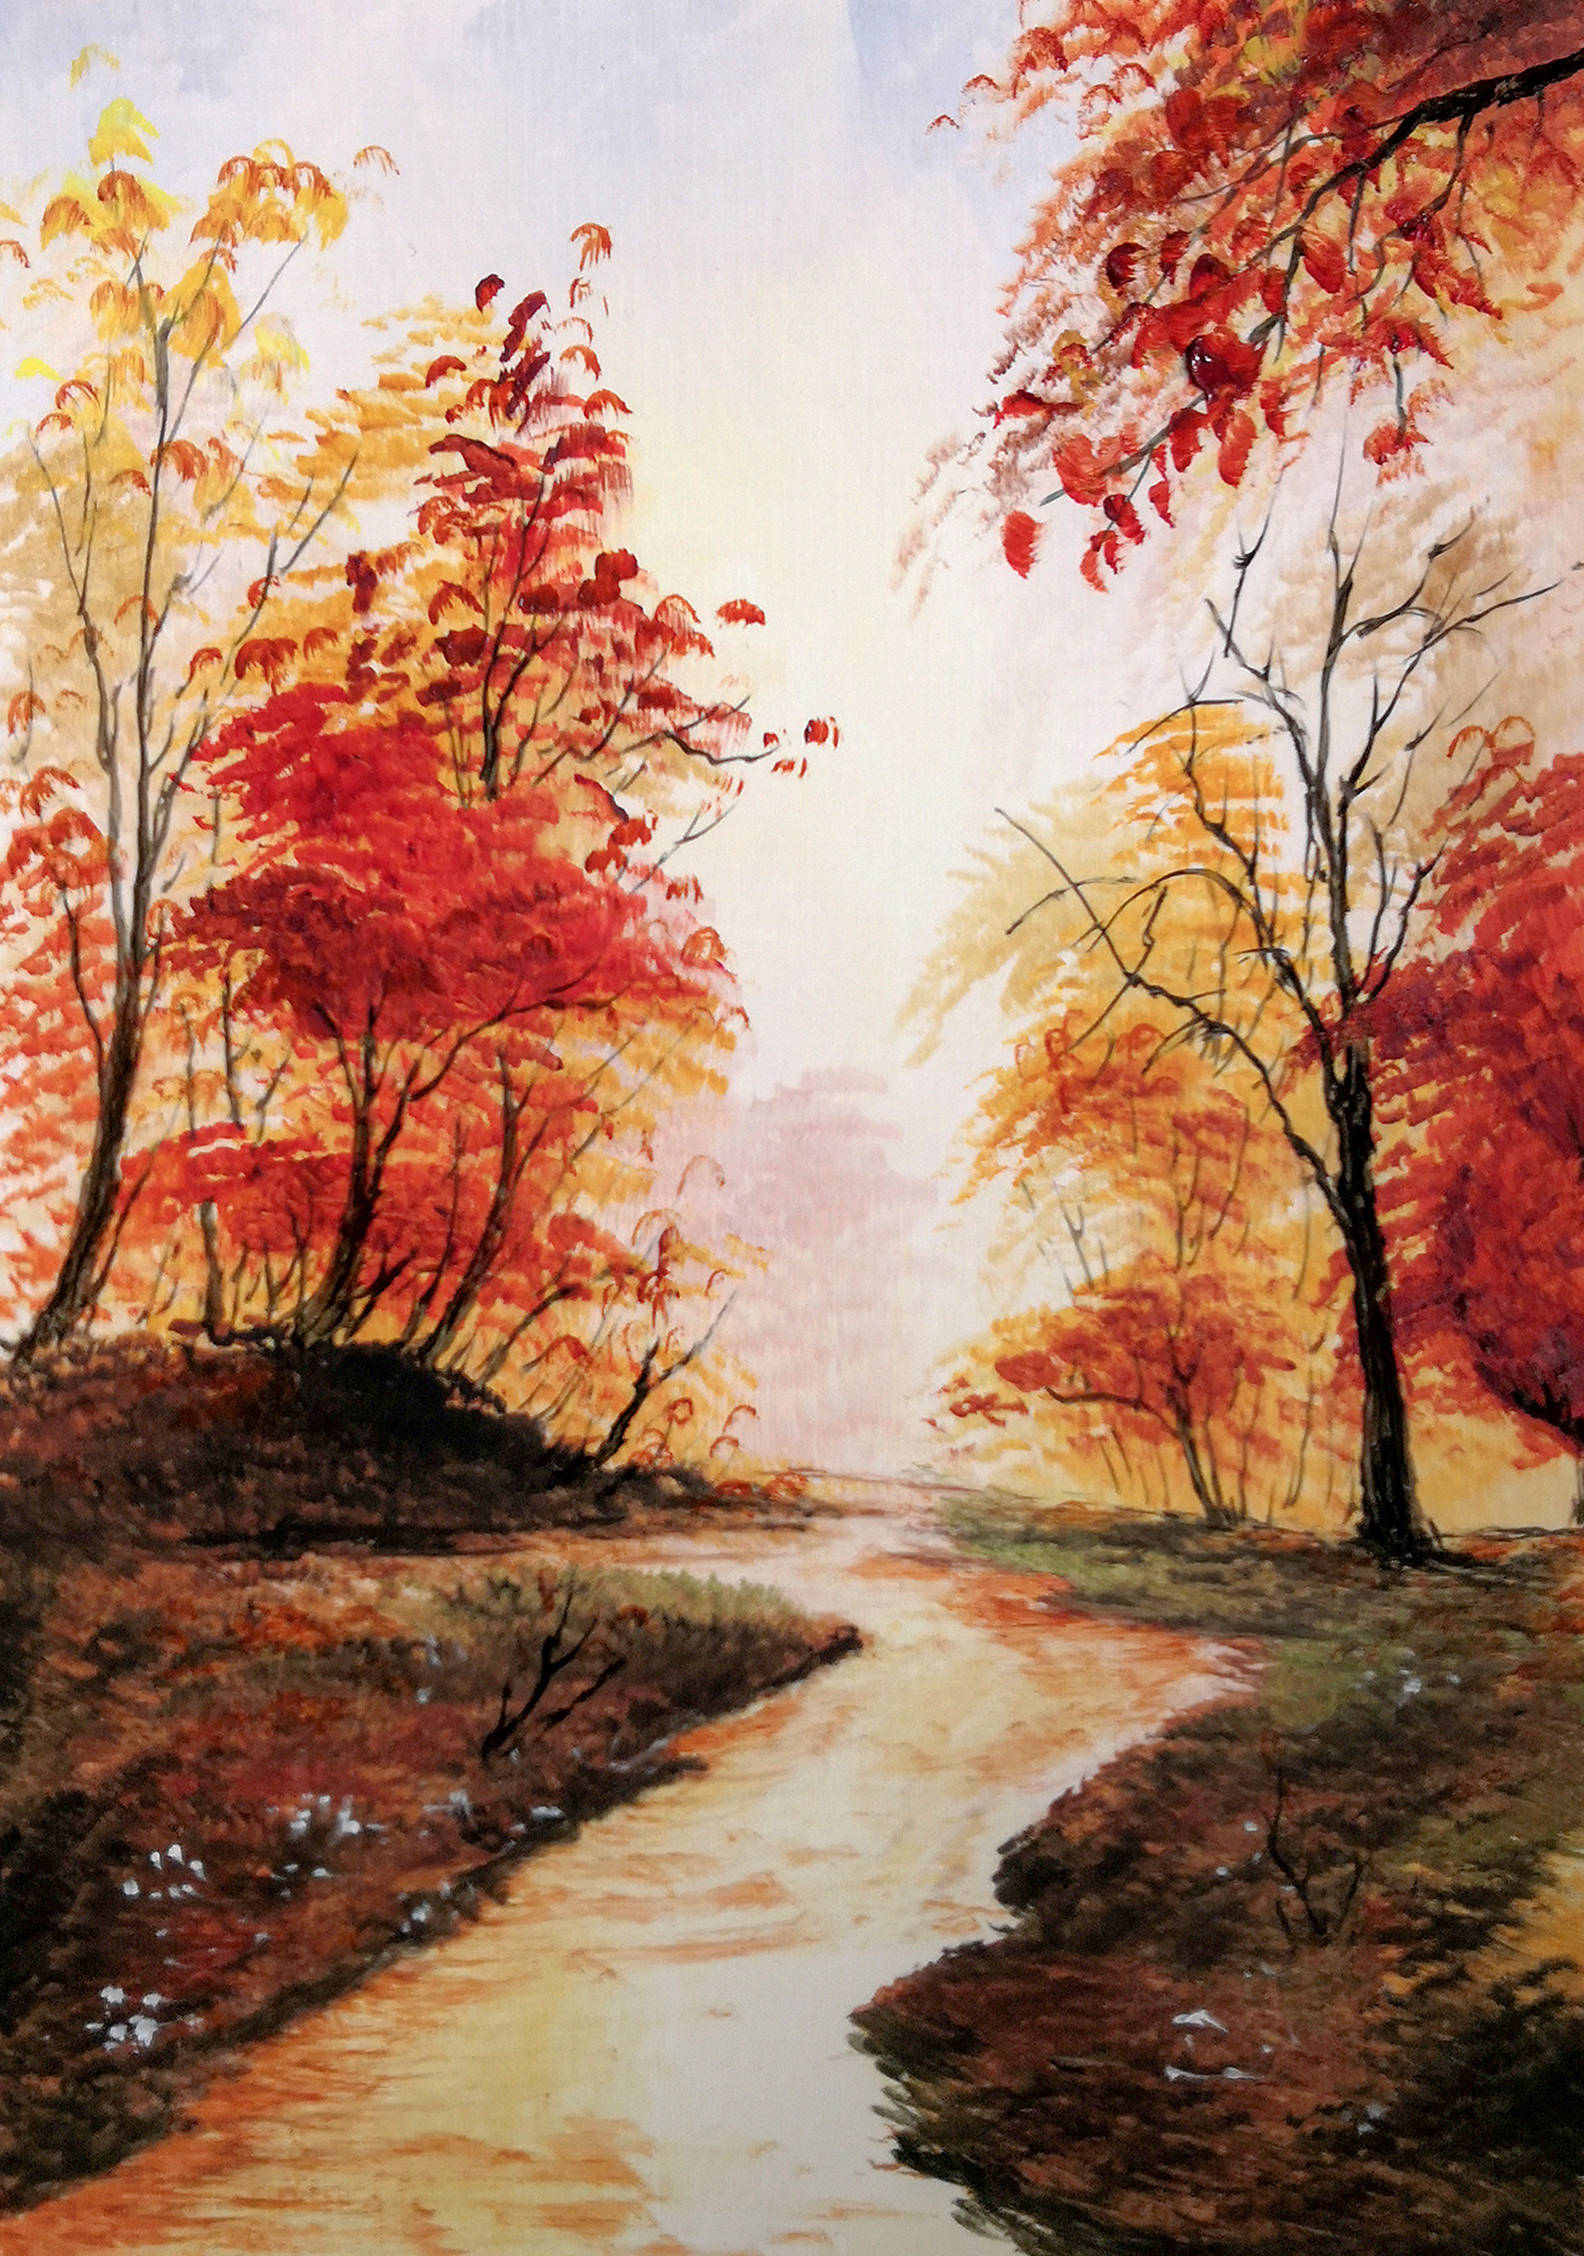 感染了全世界的秋景——10幅秋景风景画送给你!